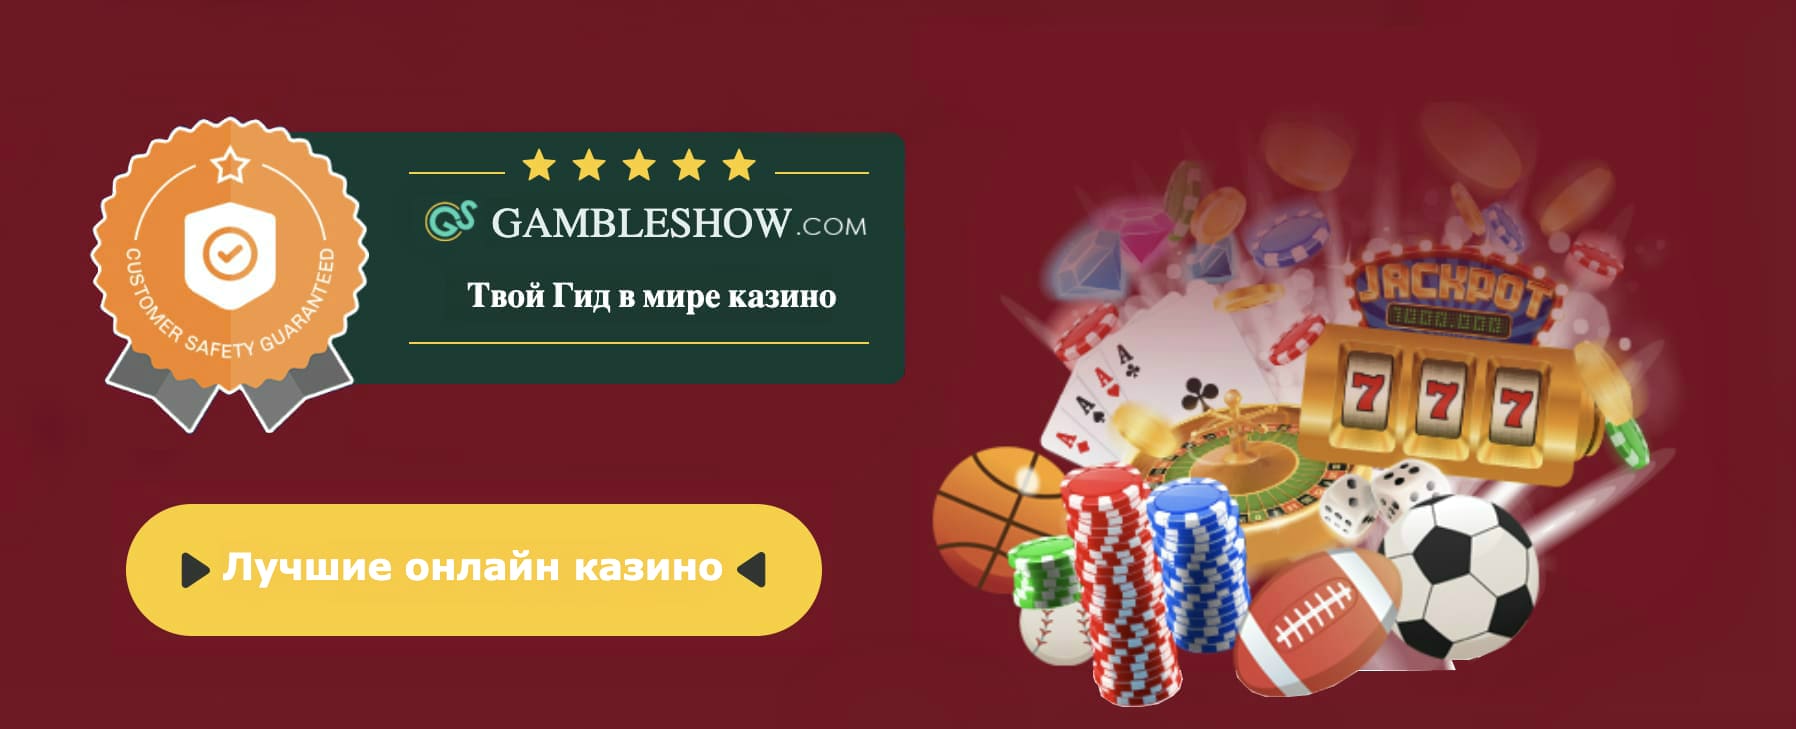 Descargar juegos casino tragamonedas gratis para pc